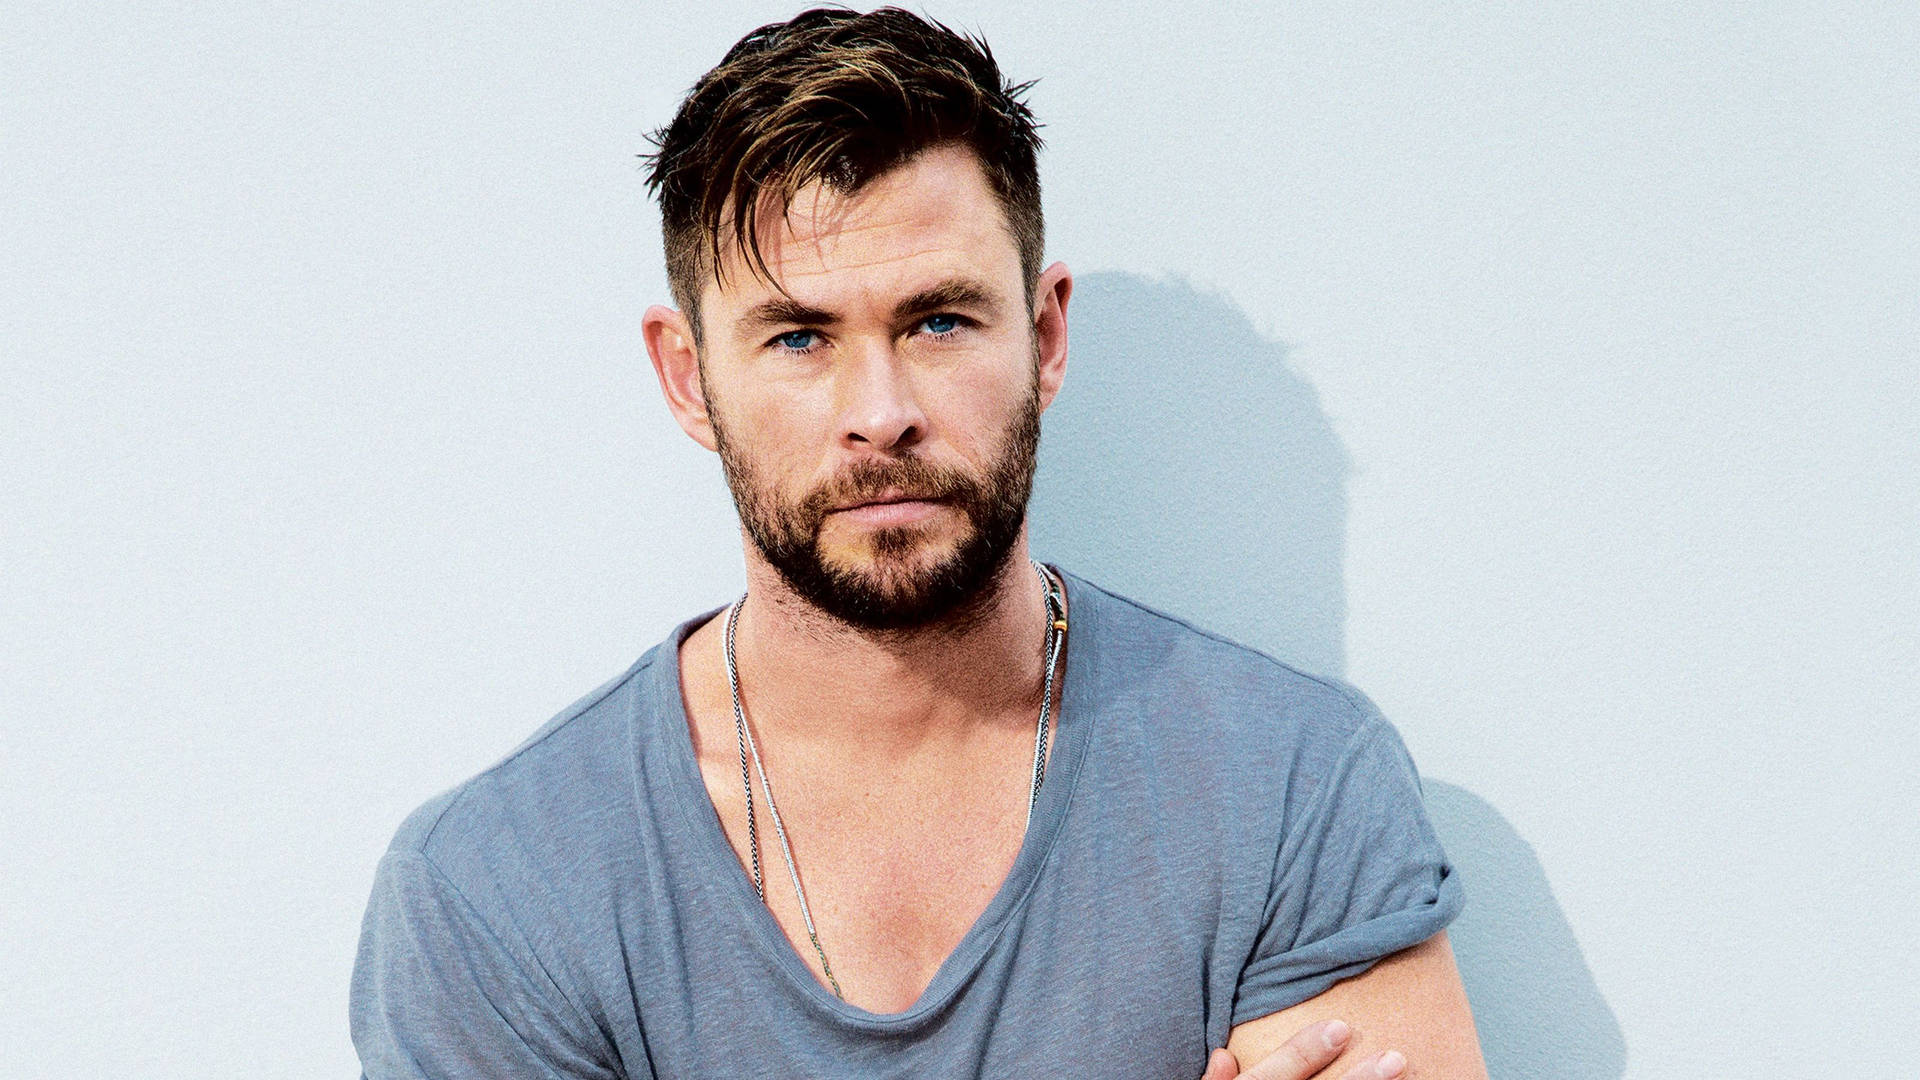 Handsome Portrait Of Chris Hemsworth Wallpaper